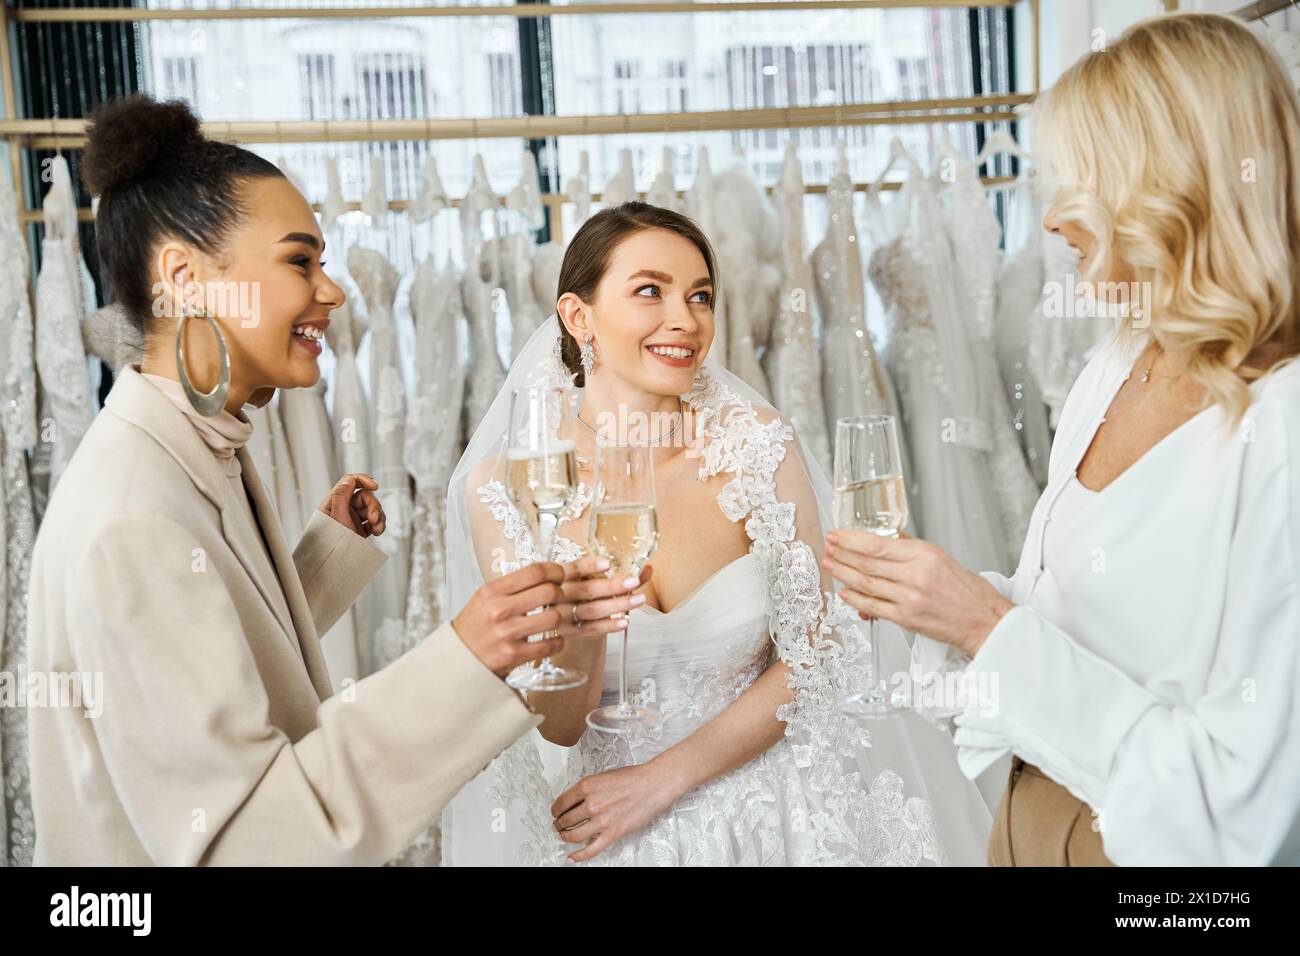 Zwei Bräute in Hochzeitskleidung und eine Frau mit Sektflöten vor einem Kleiderständer im Brautsalon. Stockfoto